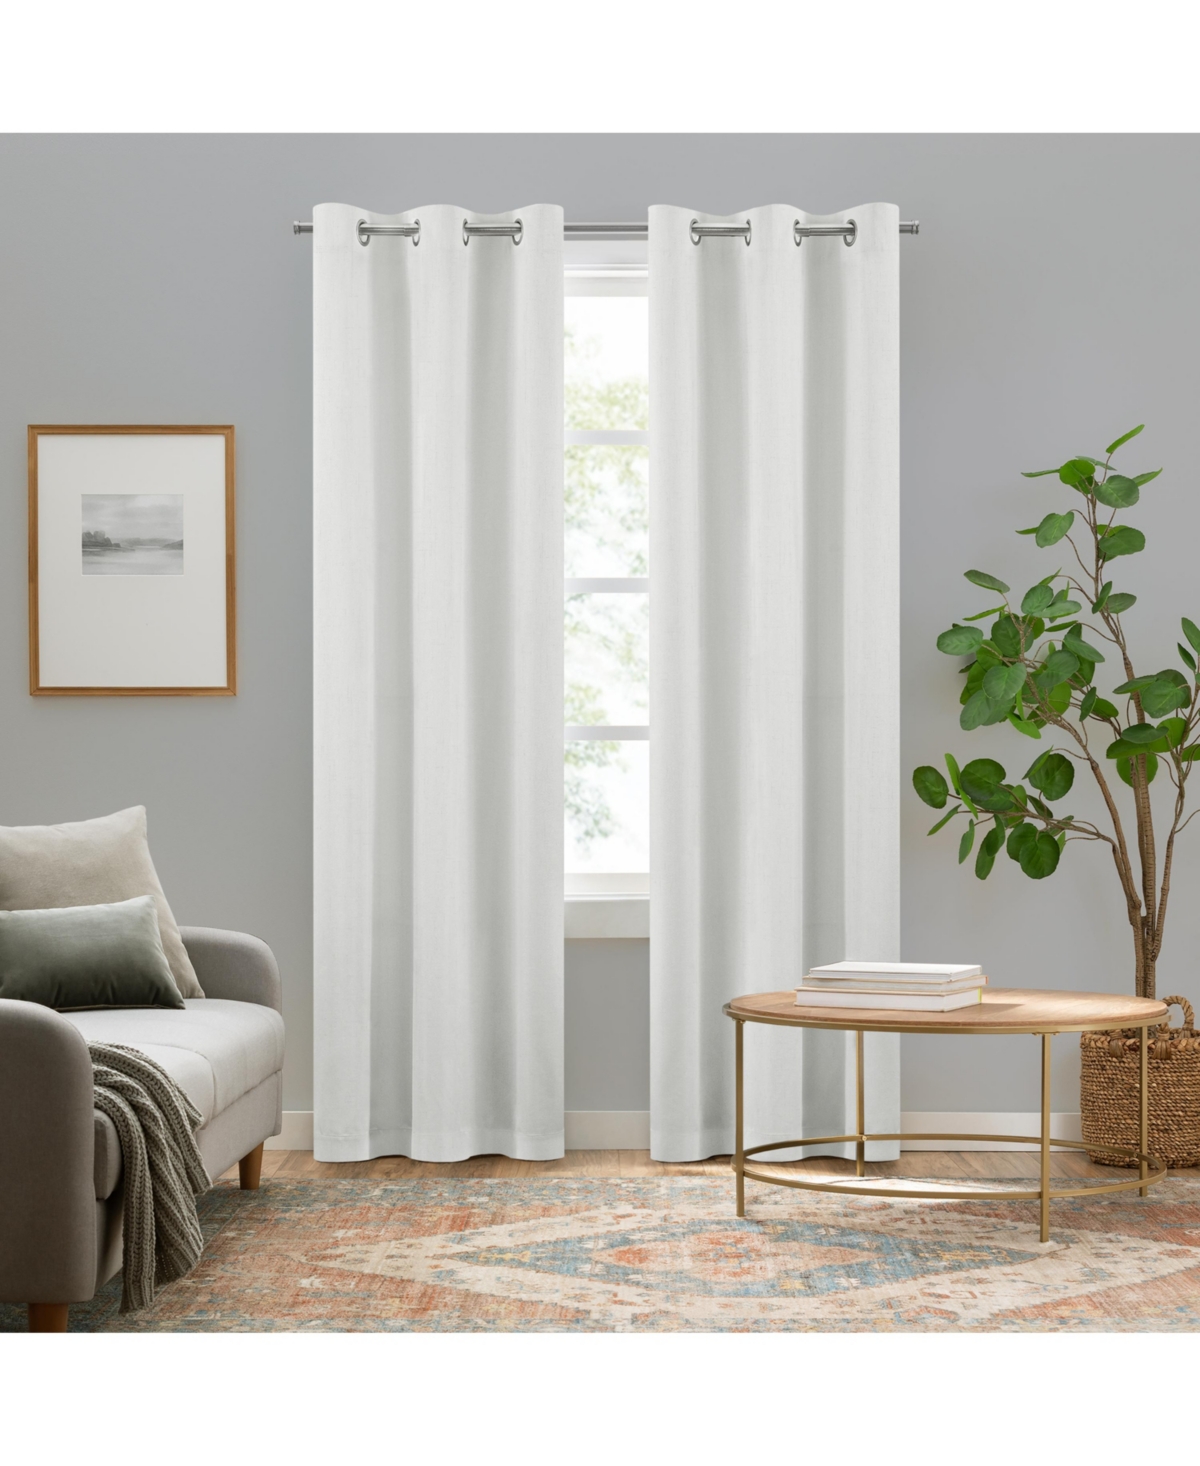 Pembroke 100% Blackout Curtains, Faux Linen Grommet Window Curtains, 95" long x 42" wide (2 Panels), White - White